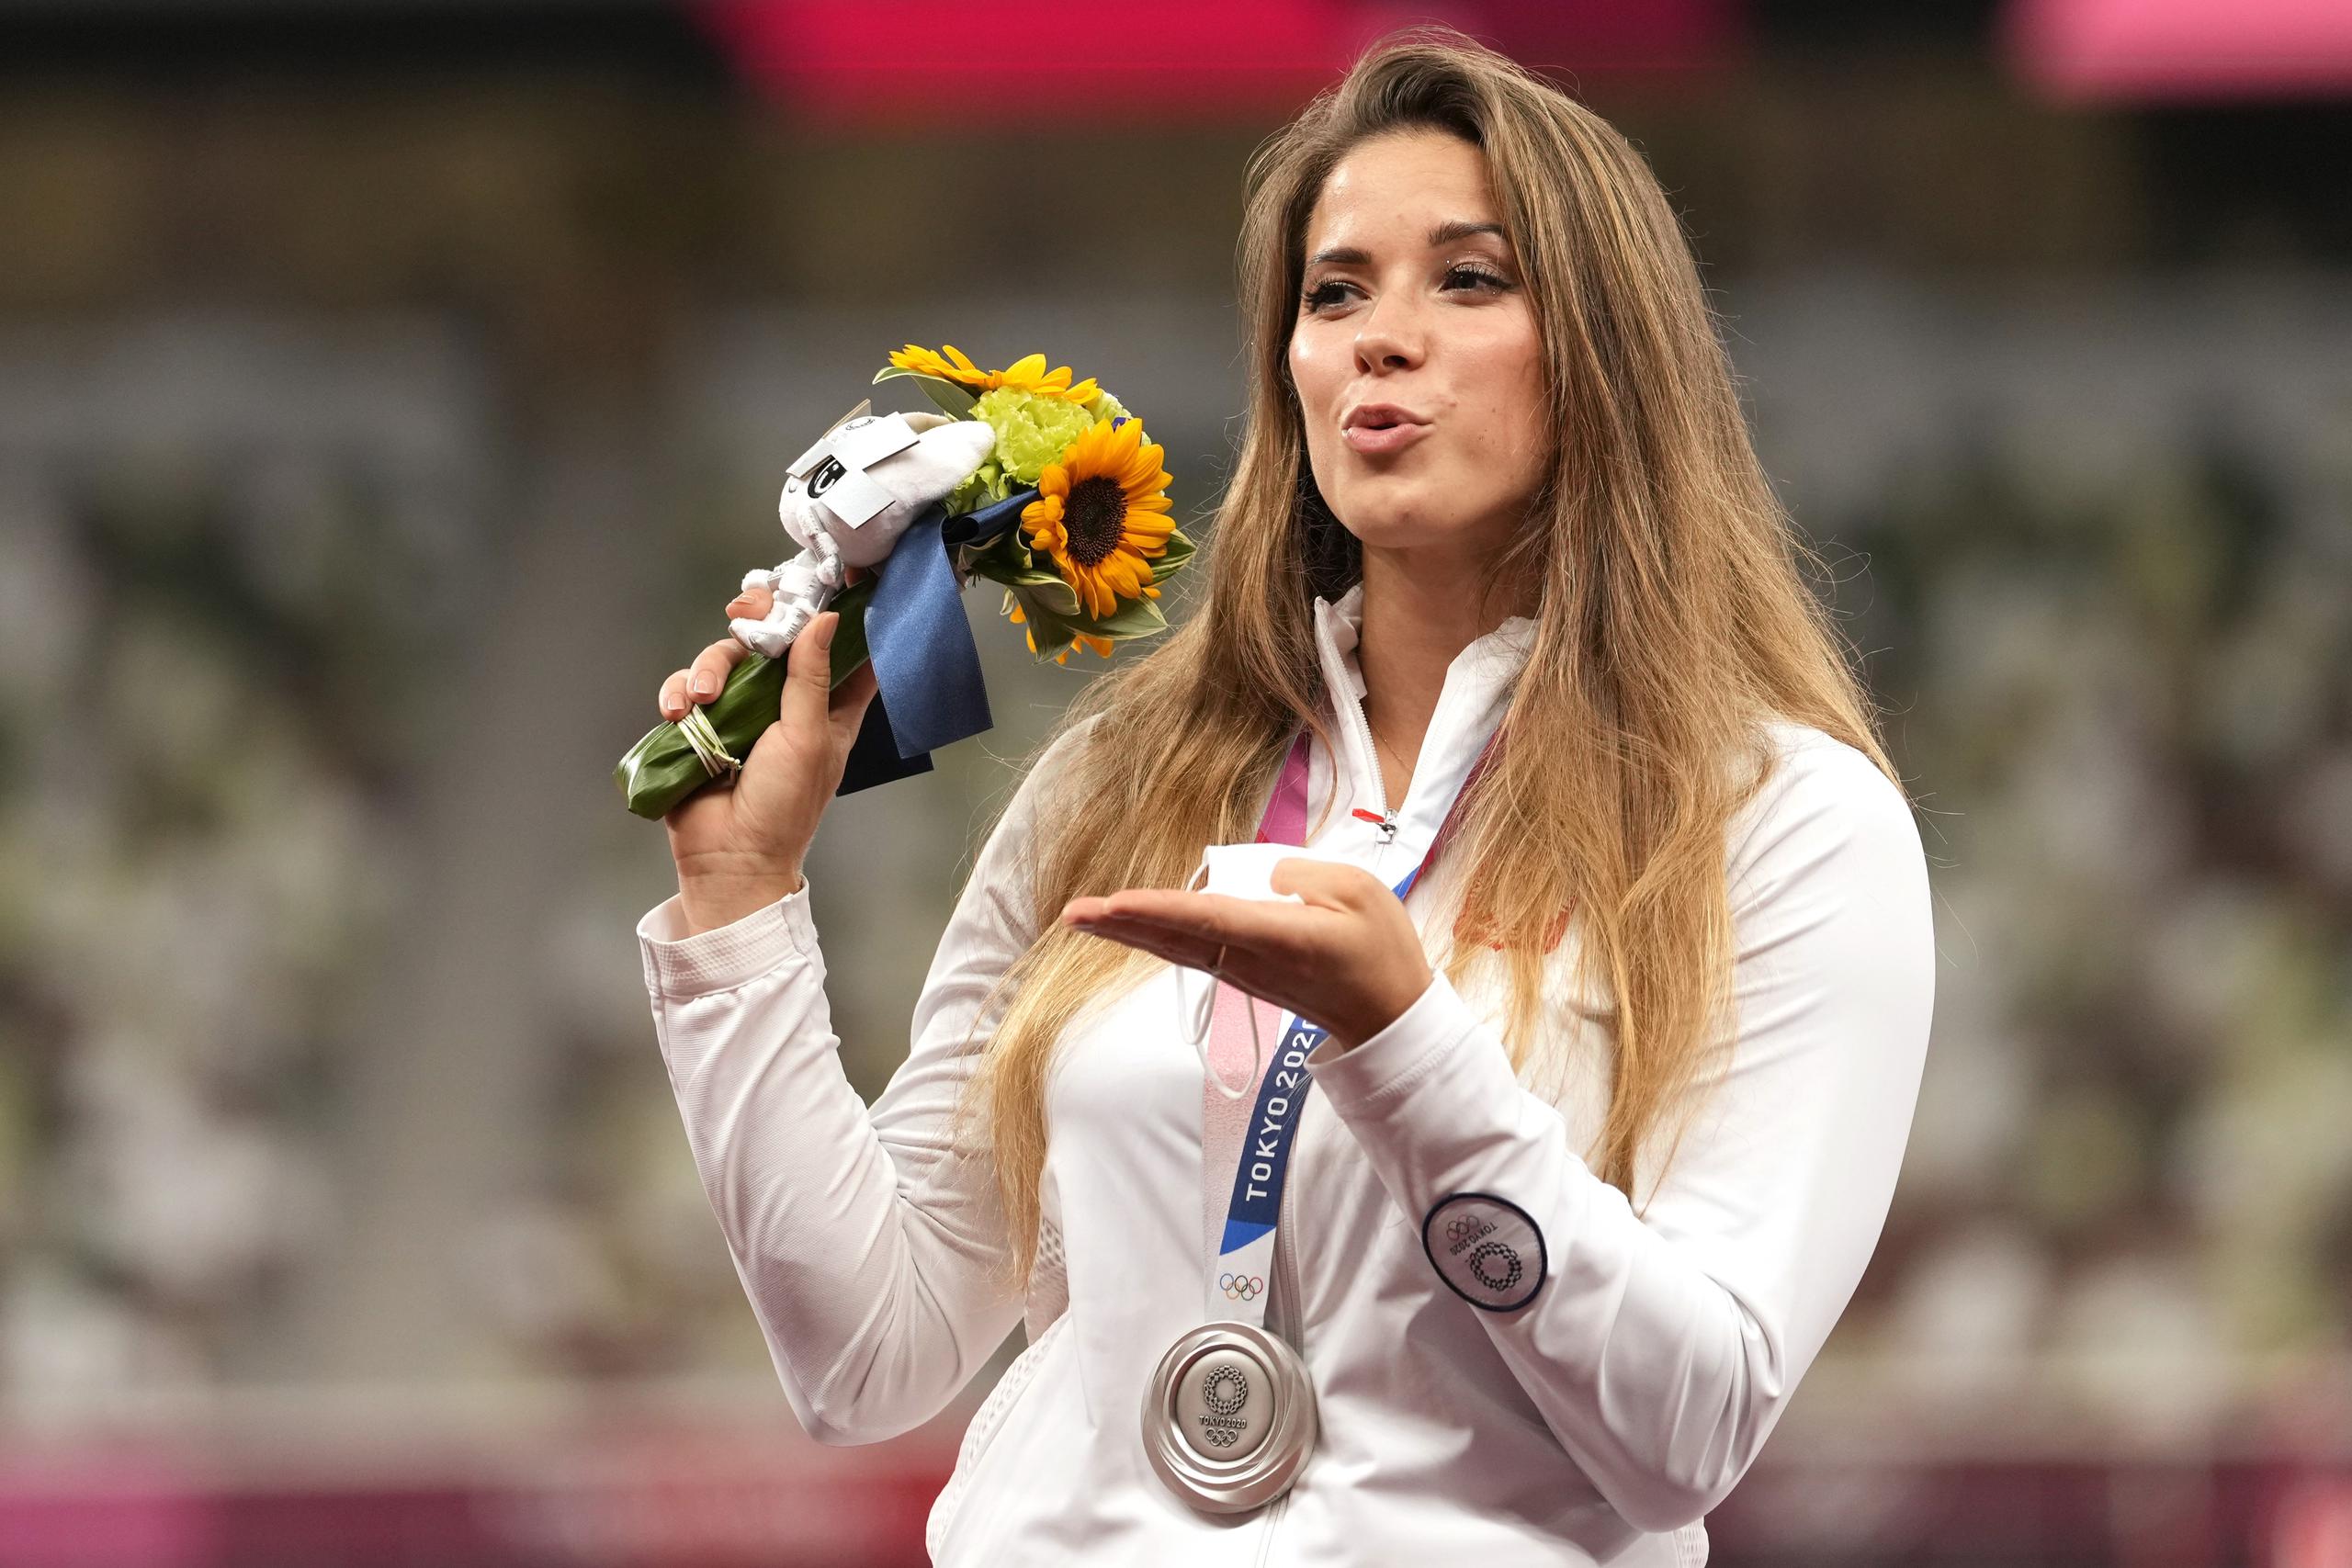 María Andrejczyk podrá conservar su medalla porque la compañía que ganó la subasta le ha dicho que se quede con ella.